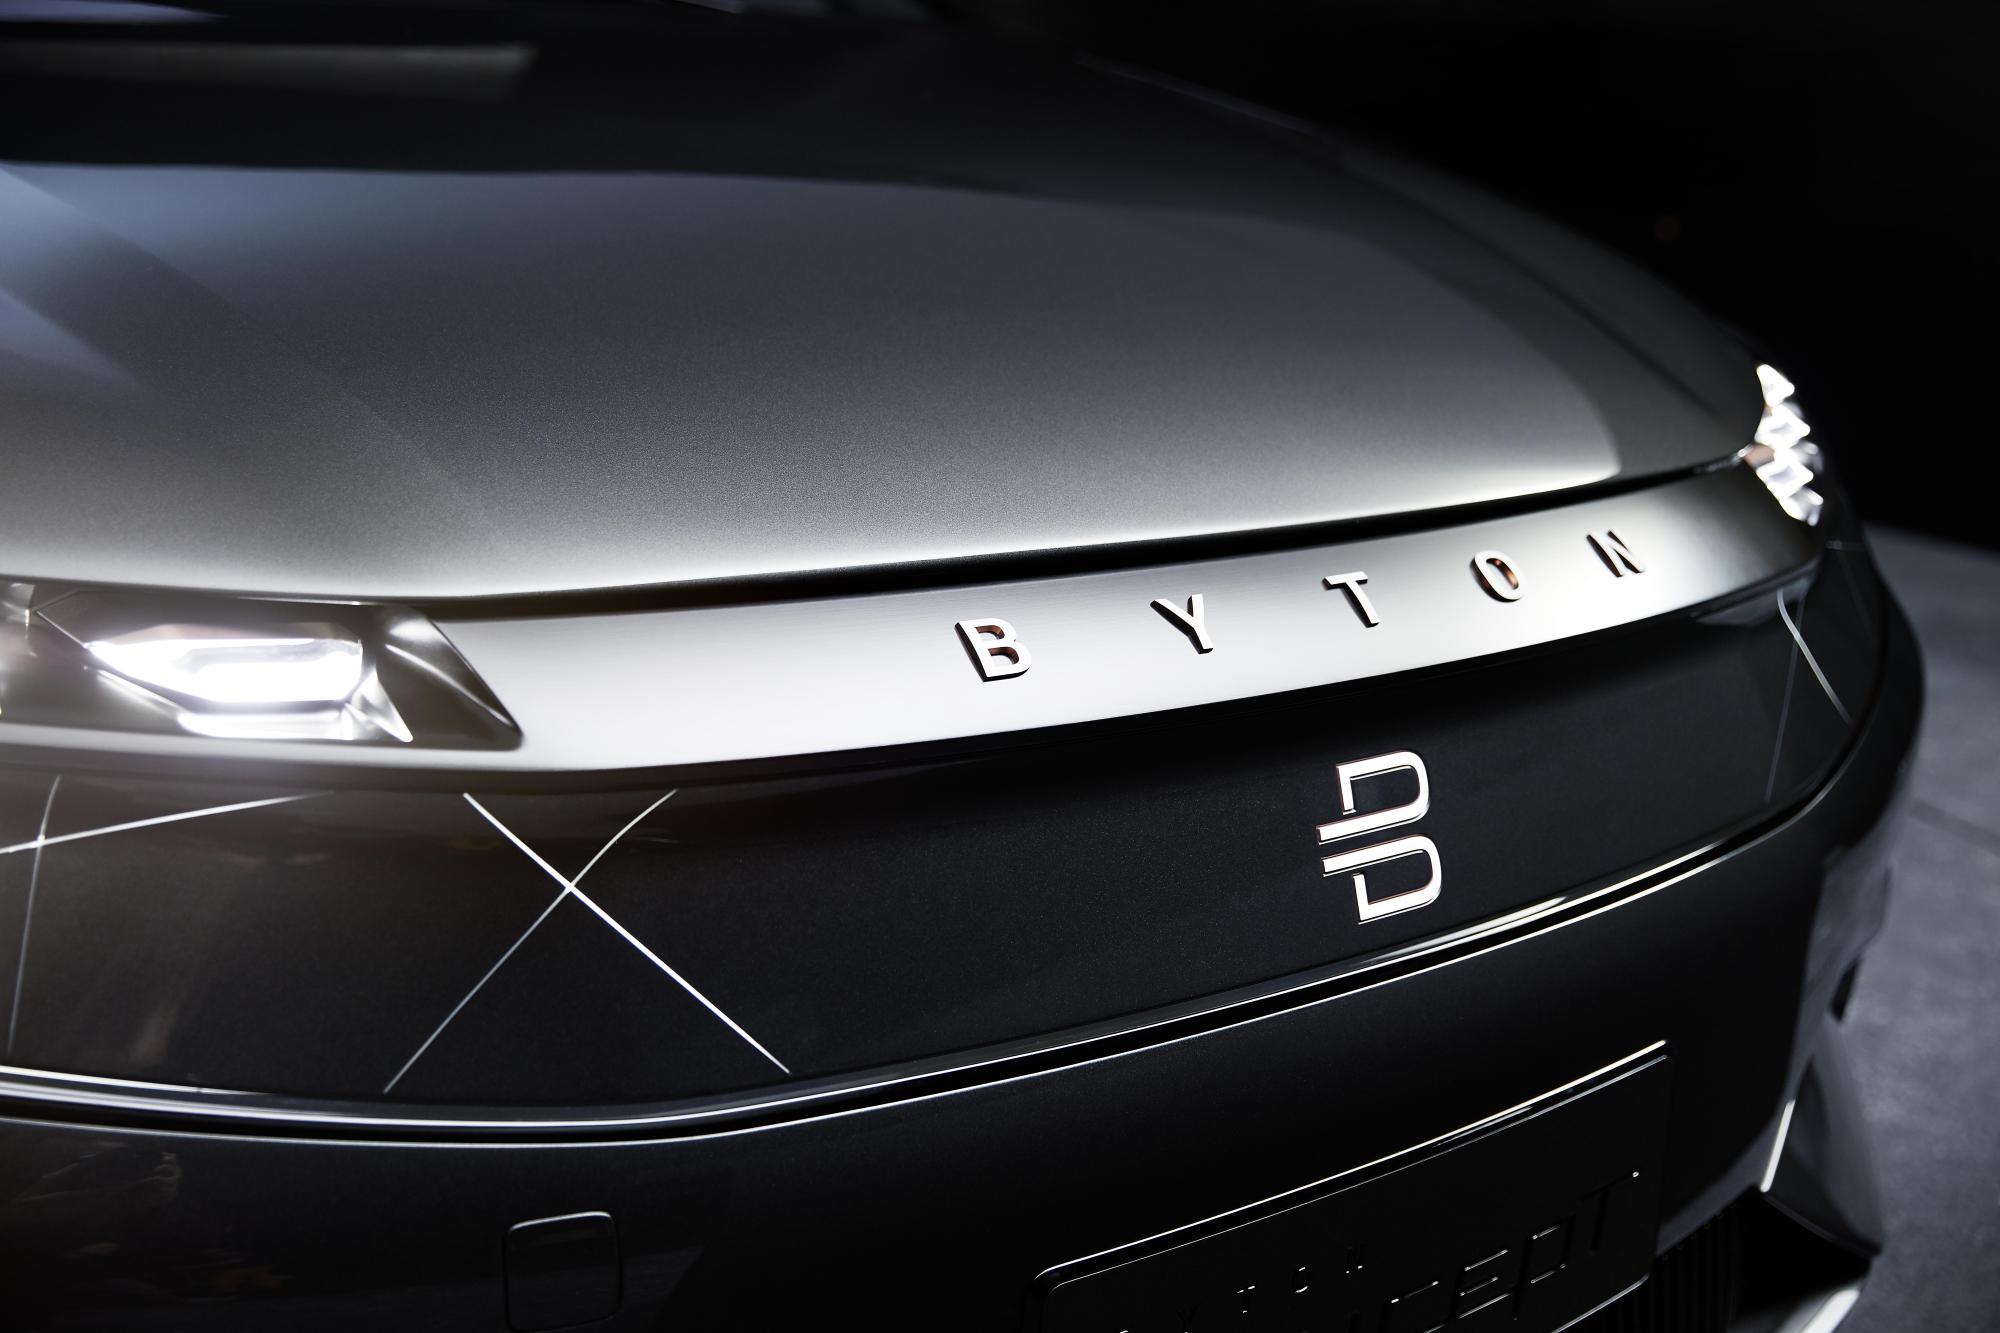 Start-up chinoise, Byton dévoile un SUV 100 % électrique équipé d’Alexa ! Par Maxime Claudel 8-byton-smart-surfaces